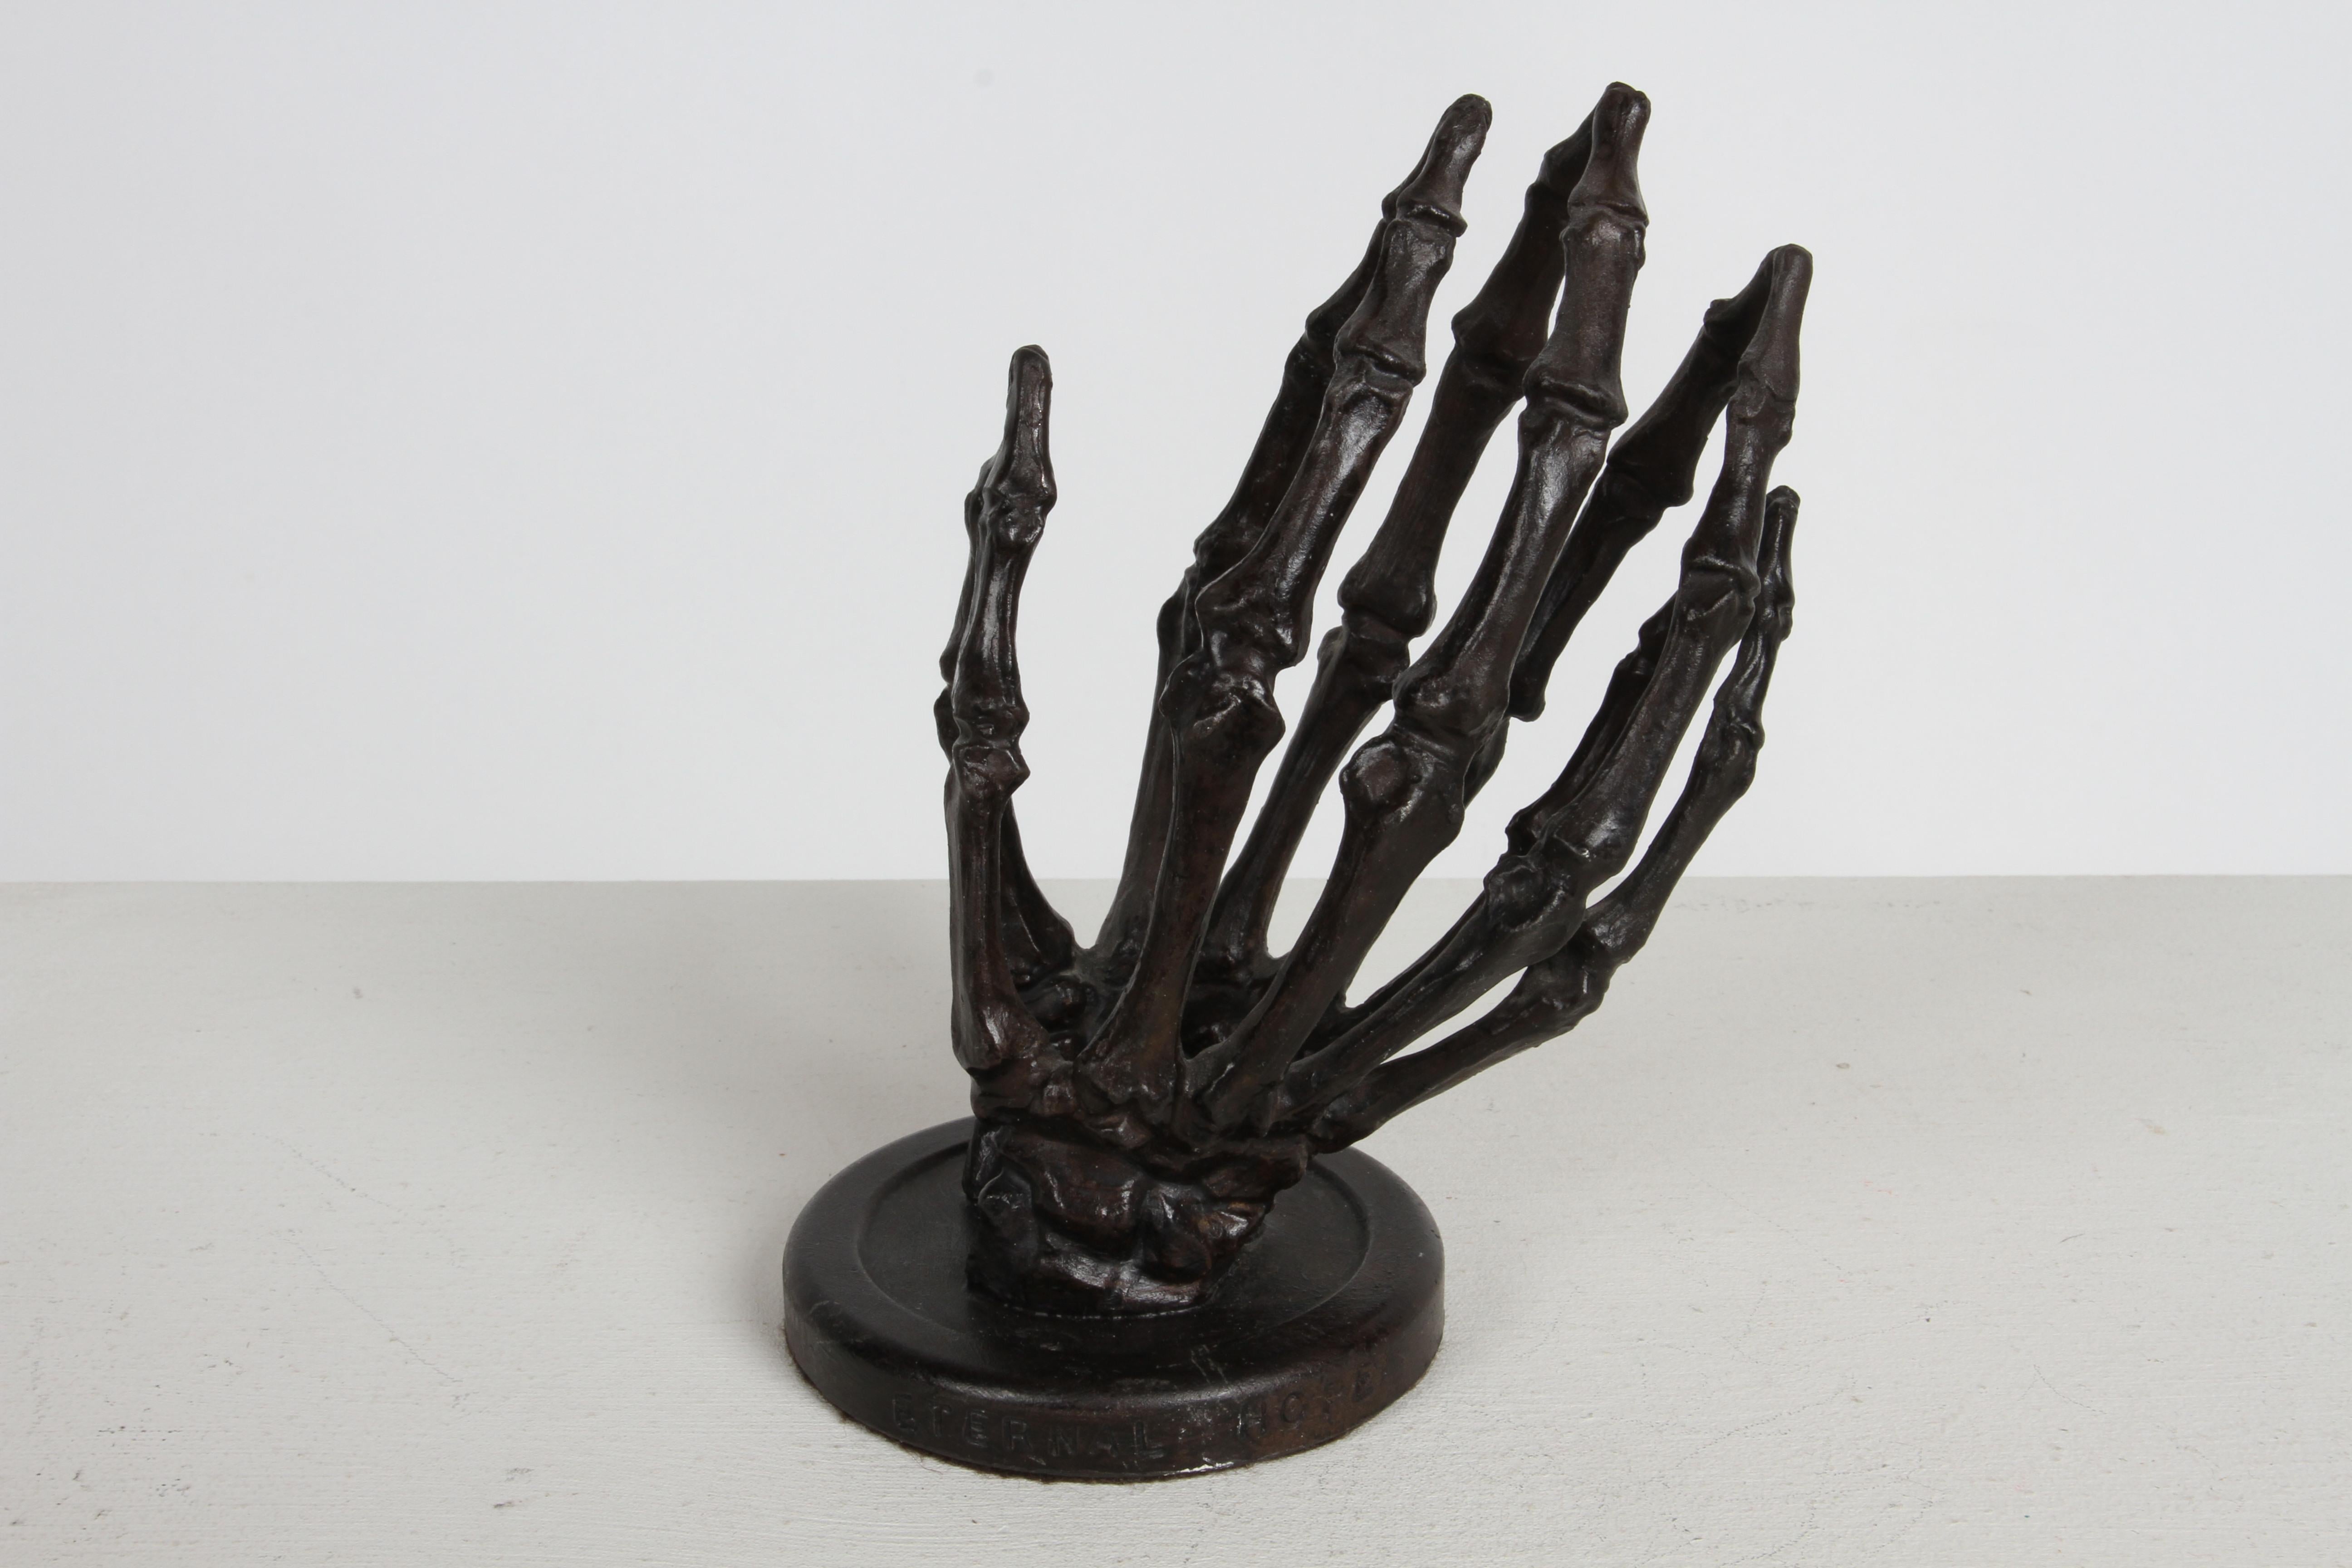 Gegossene Bronze in Lebensgröße gotisches Skelett / Knochen betende Hände Skulptur, betitelt auf Basis Eternal Hope und signiert Park '92. Im Stil von Blackman Cruz Workshop. 

